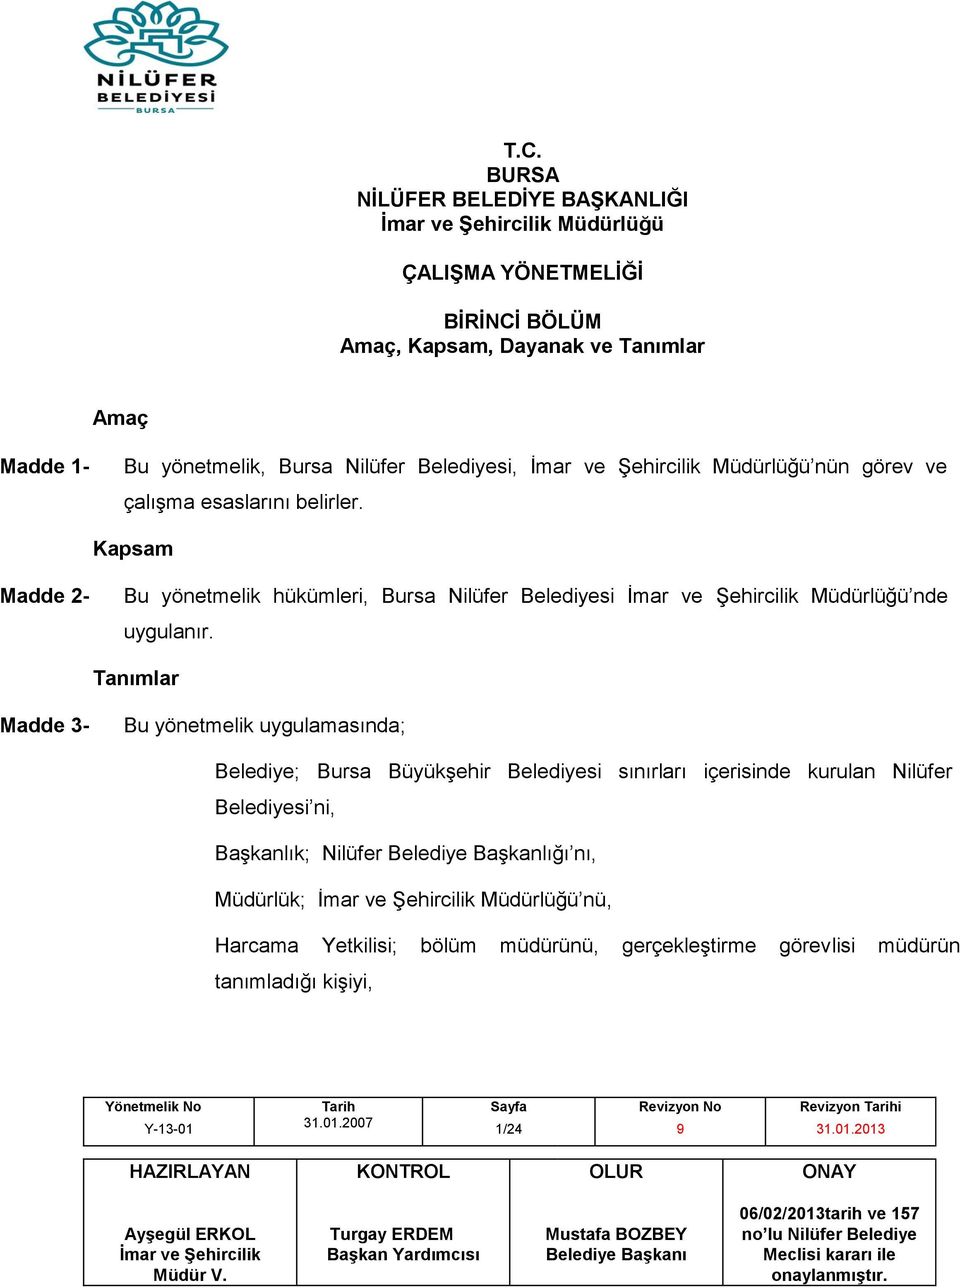 Kapsam Madde 2- Bu yönetmelik hükümleri, Bursa Nilüfer Belediyesi Müdürlüğü nde uygulanır.